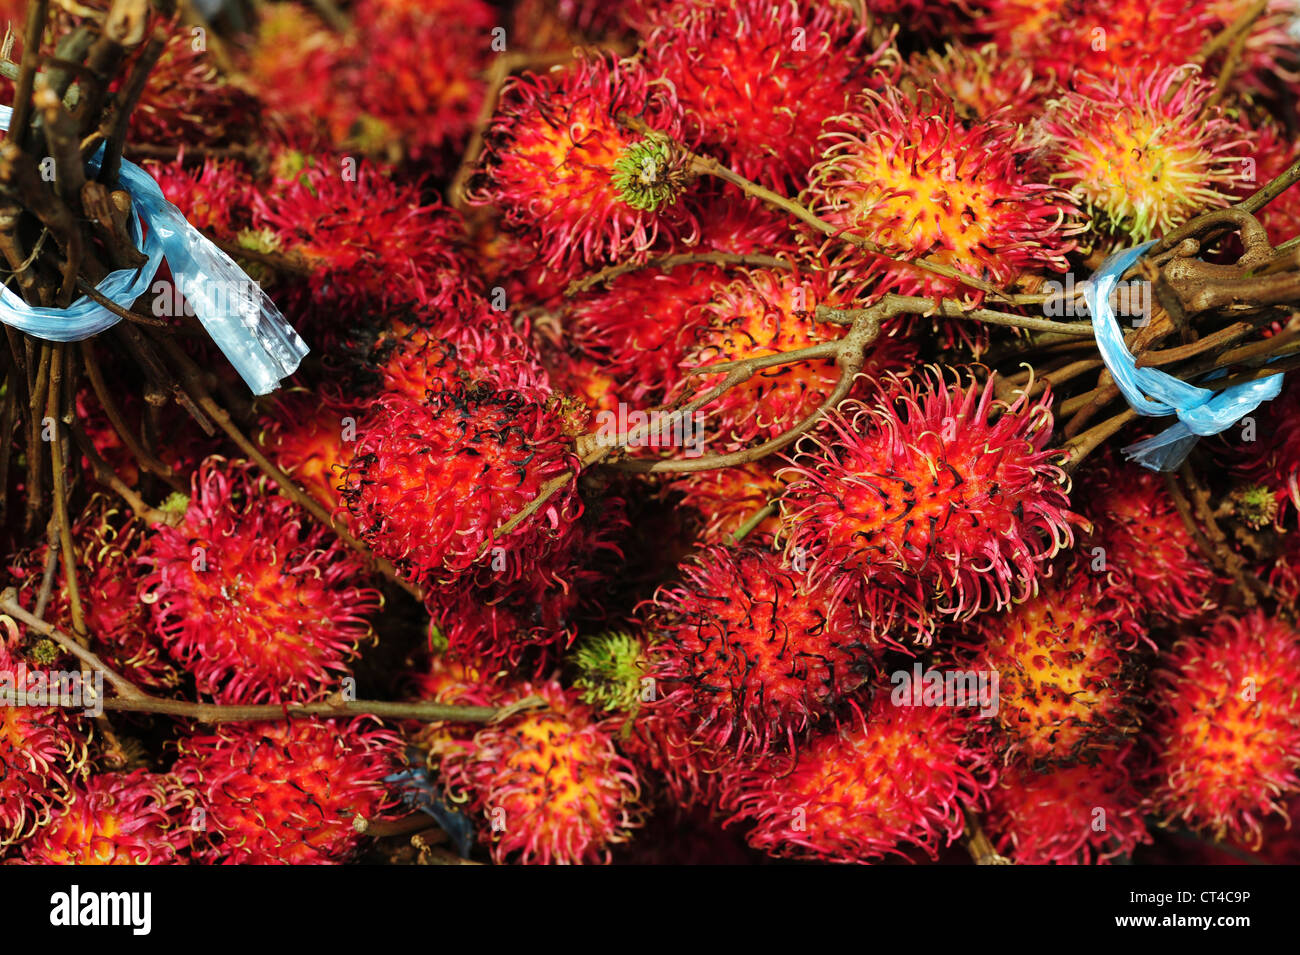 Malaysia, Borneo, Semporna, red ramboutan Stock Photo